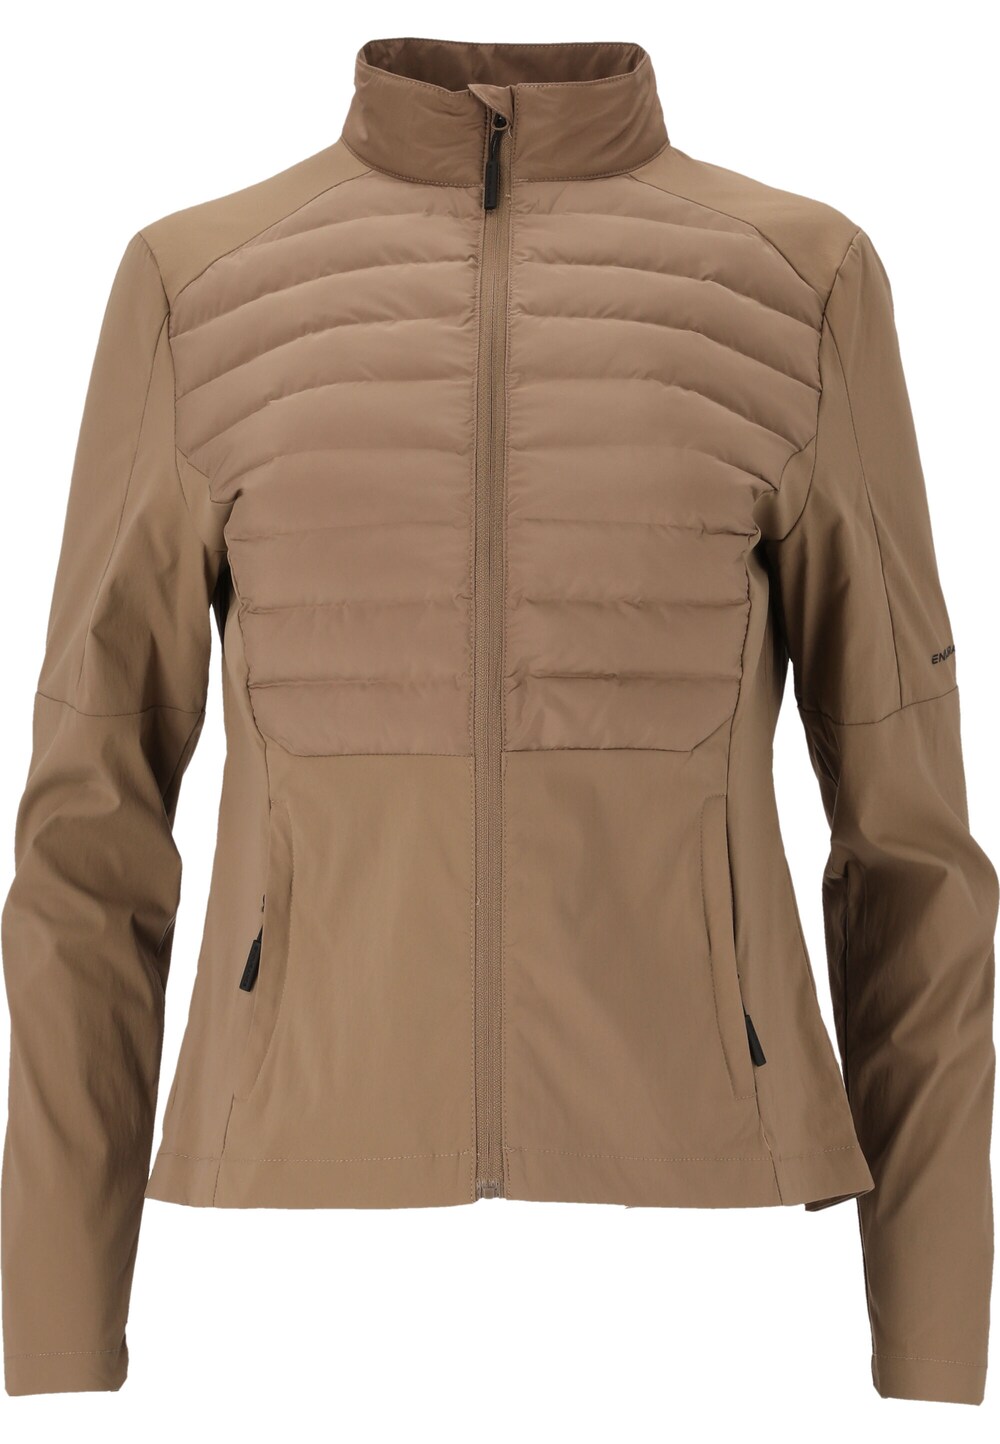 Спортивная куртка Endurance Beistyla, светло-коричневый